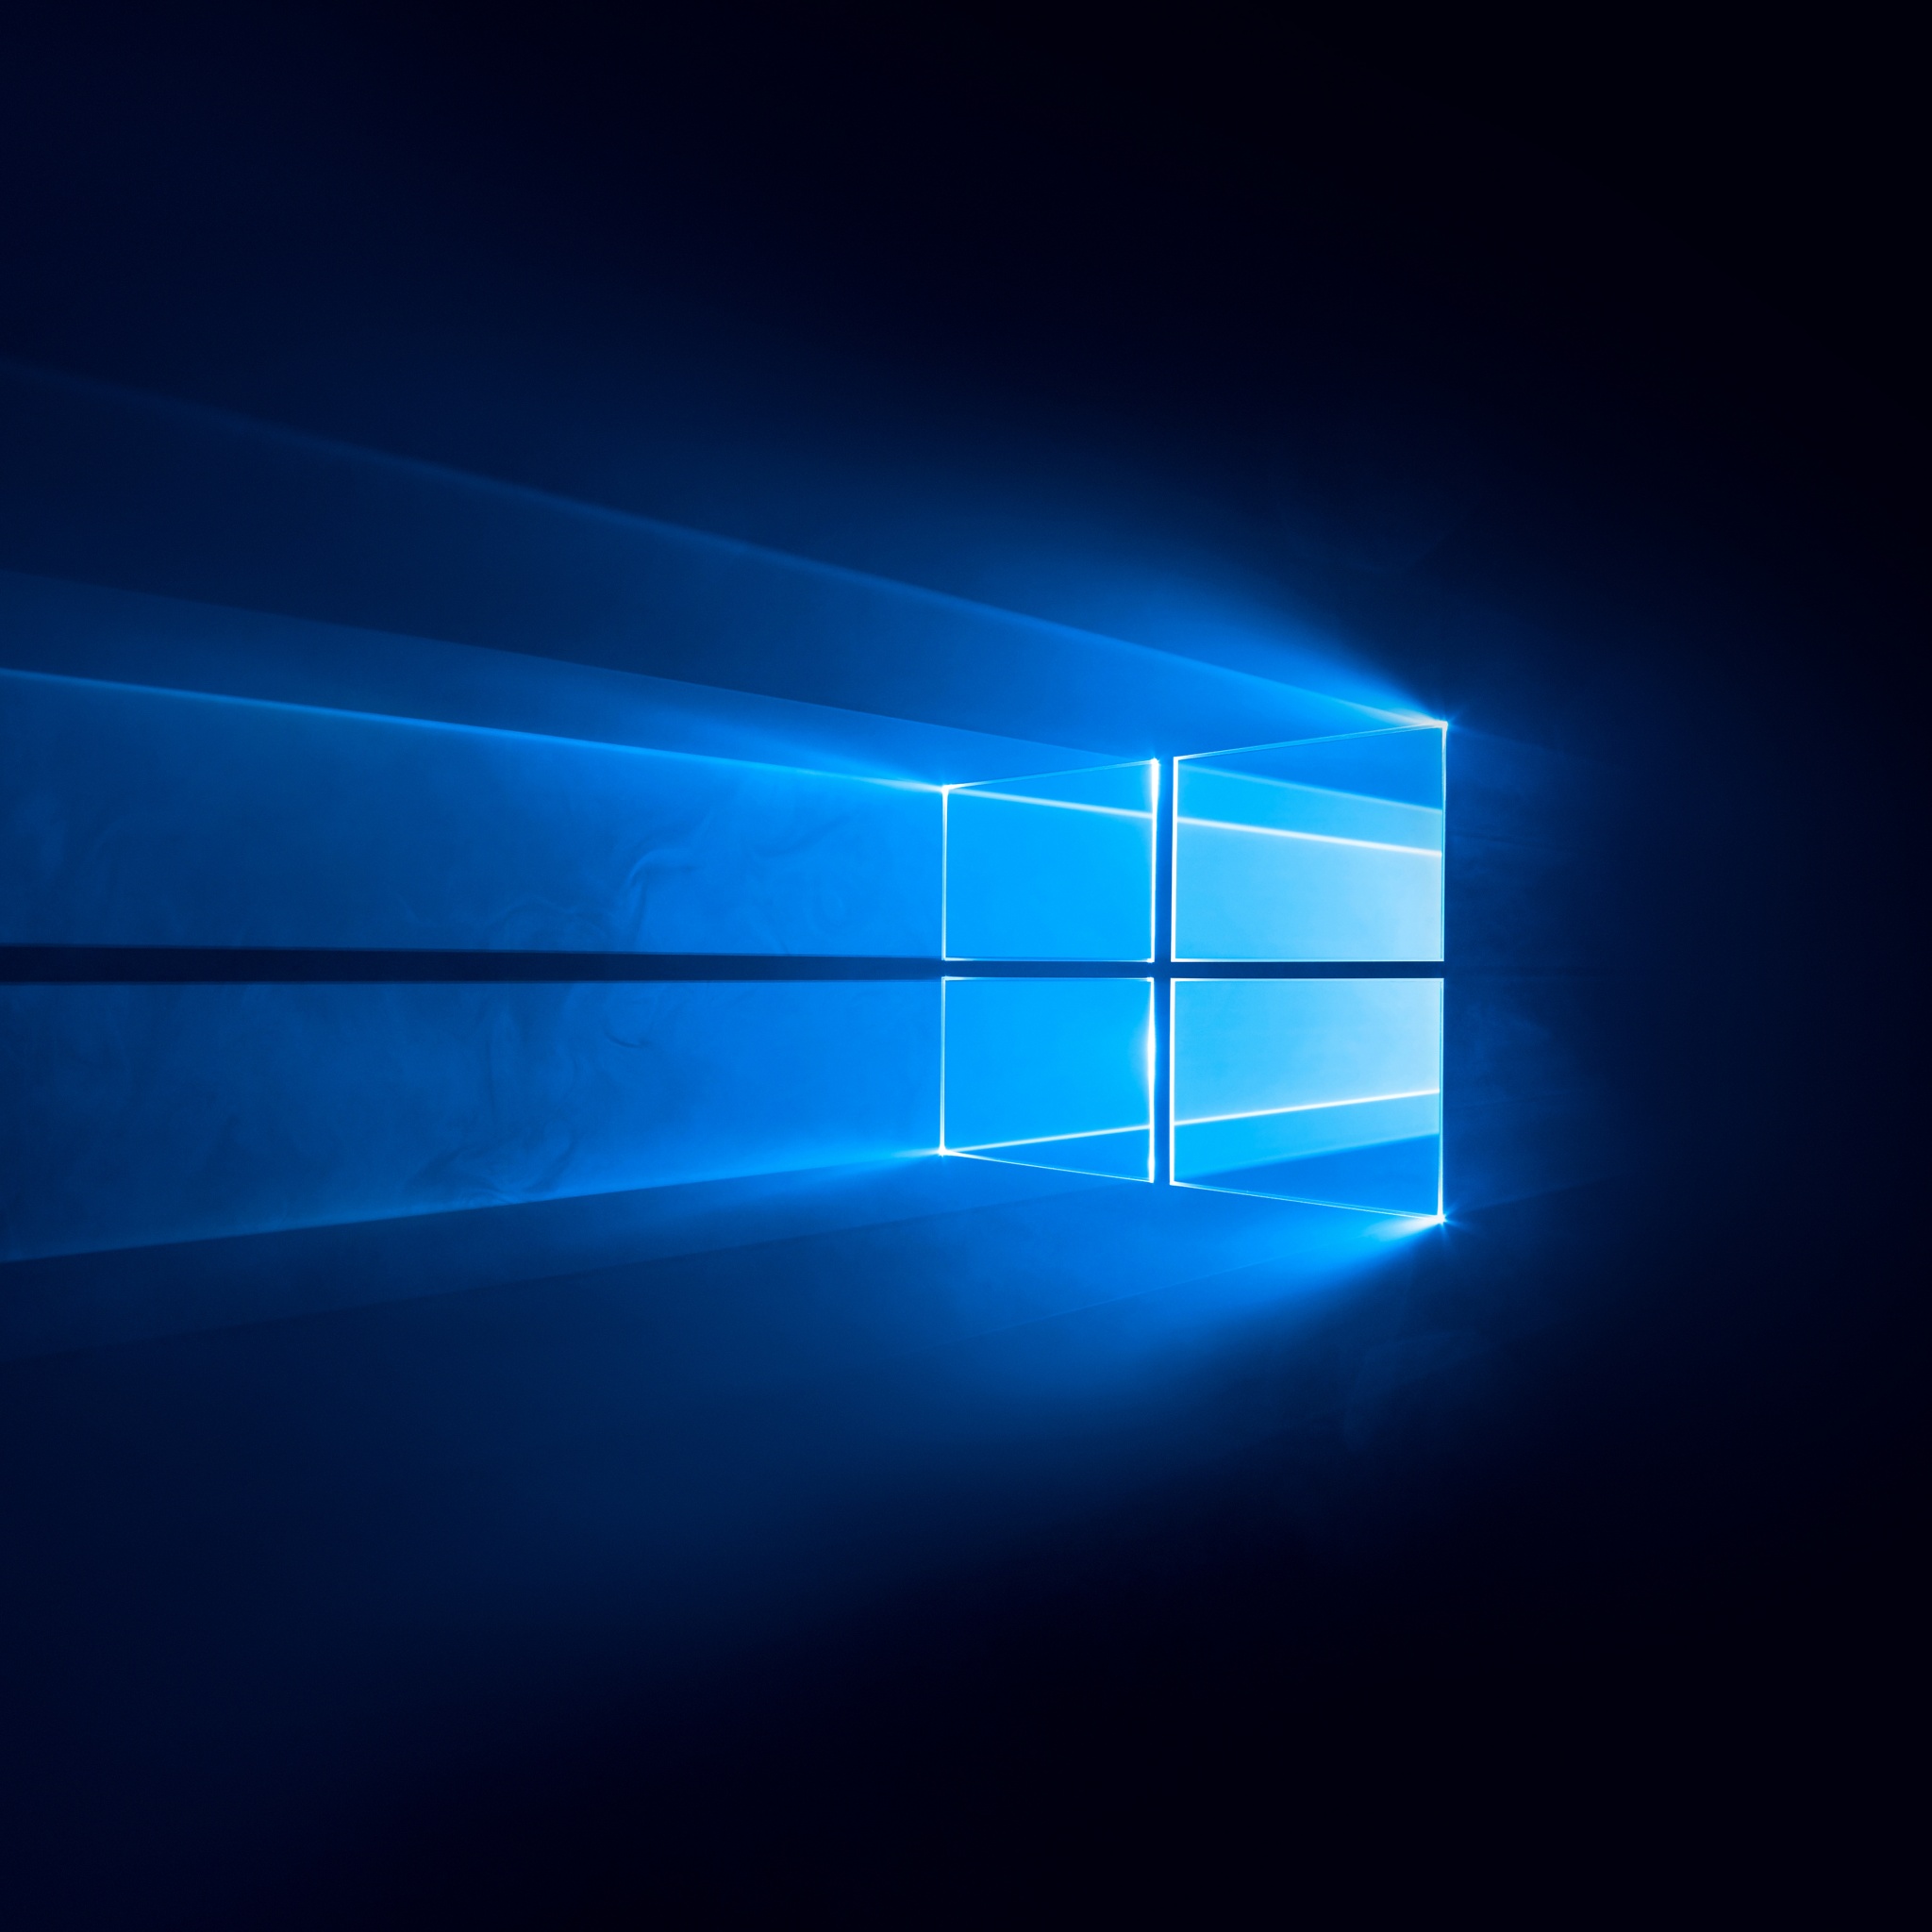 Hình nền Windows 10 4K đầy màu sắc, màu đen bí ẩn kết hợp với công nghệ tiên tiến và # 733 không chỉ đẹp mà còn cho chất lượng tuyệt vời, mượt mà. Nó sẽ làm cho máy tính của bạn trở nên đẳng cấp và hiện đại hơn bao giờ hết. Hãy chiêm ngưỡng chi tiết và màu sắc siêu sắc nét của nó trên bức hình nền siêu nét này.